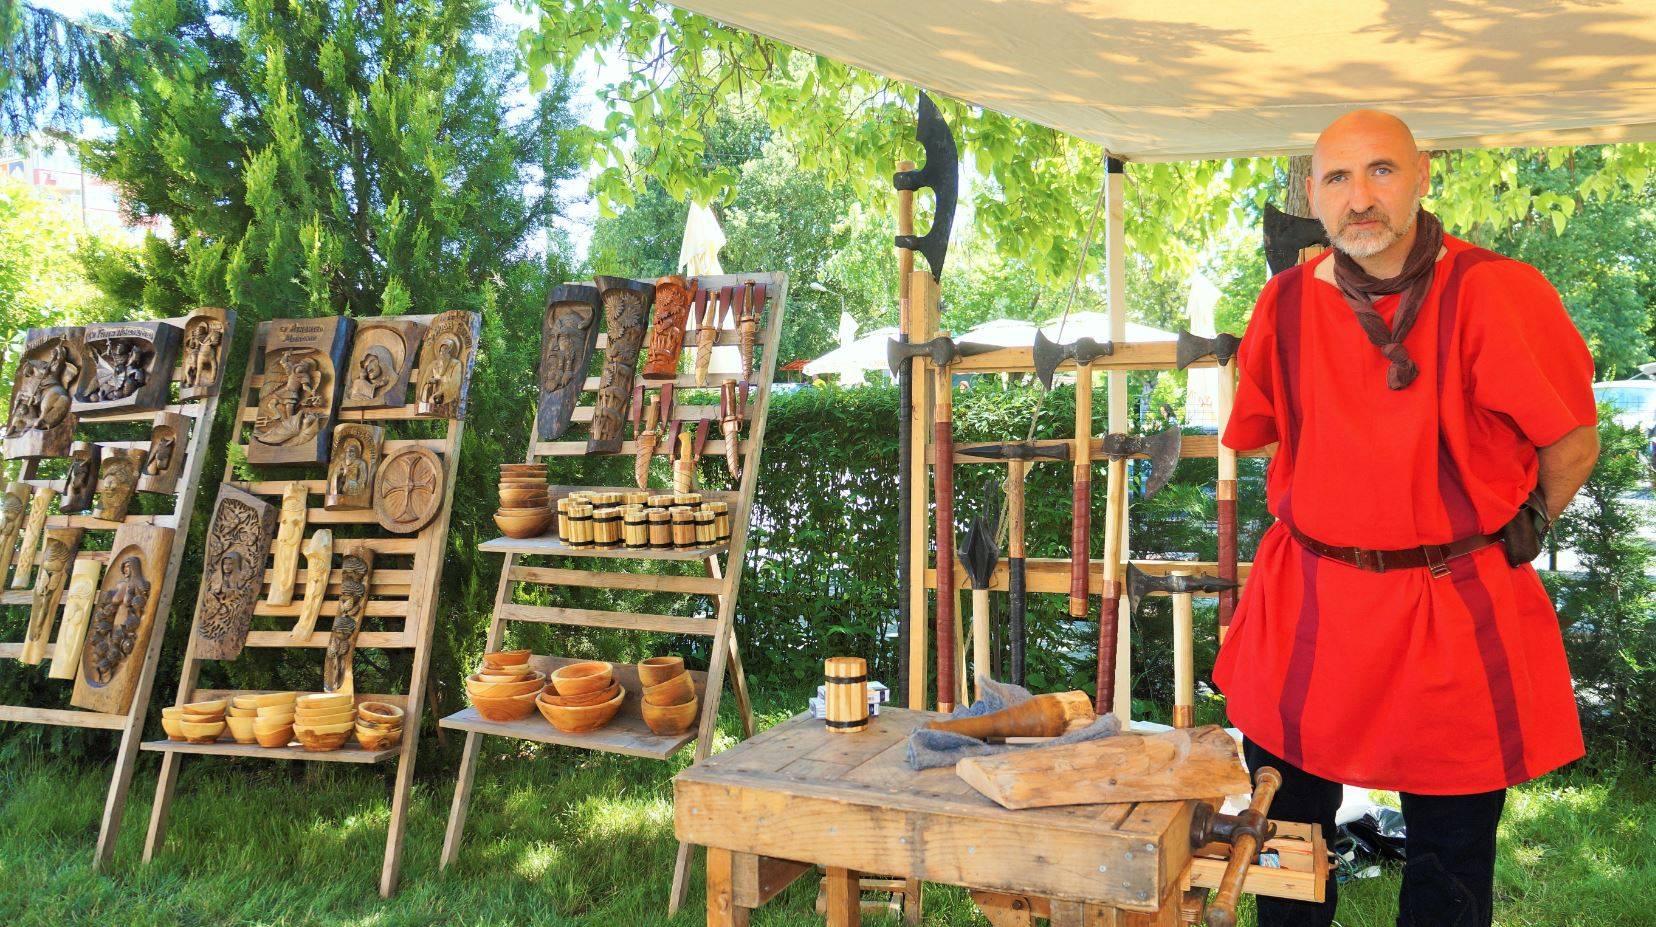 Осми фестивал на средновековните традиции, бит и култура в Мездра